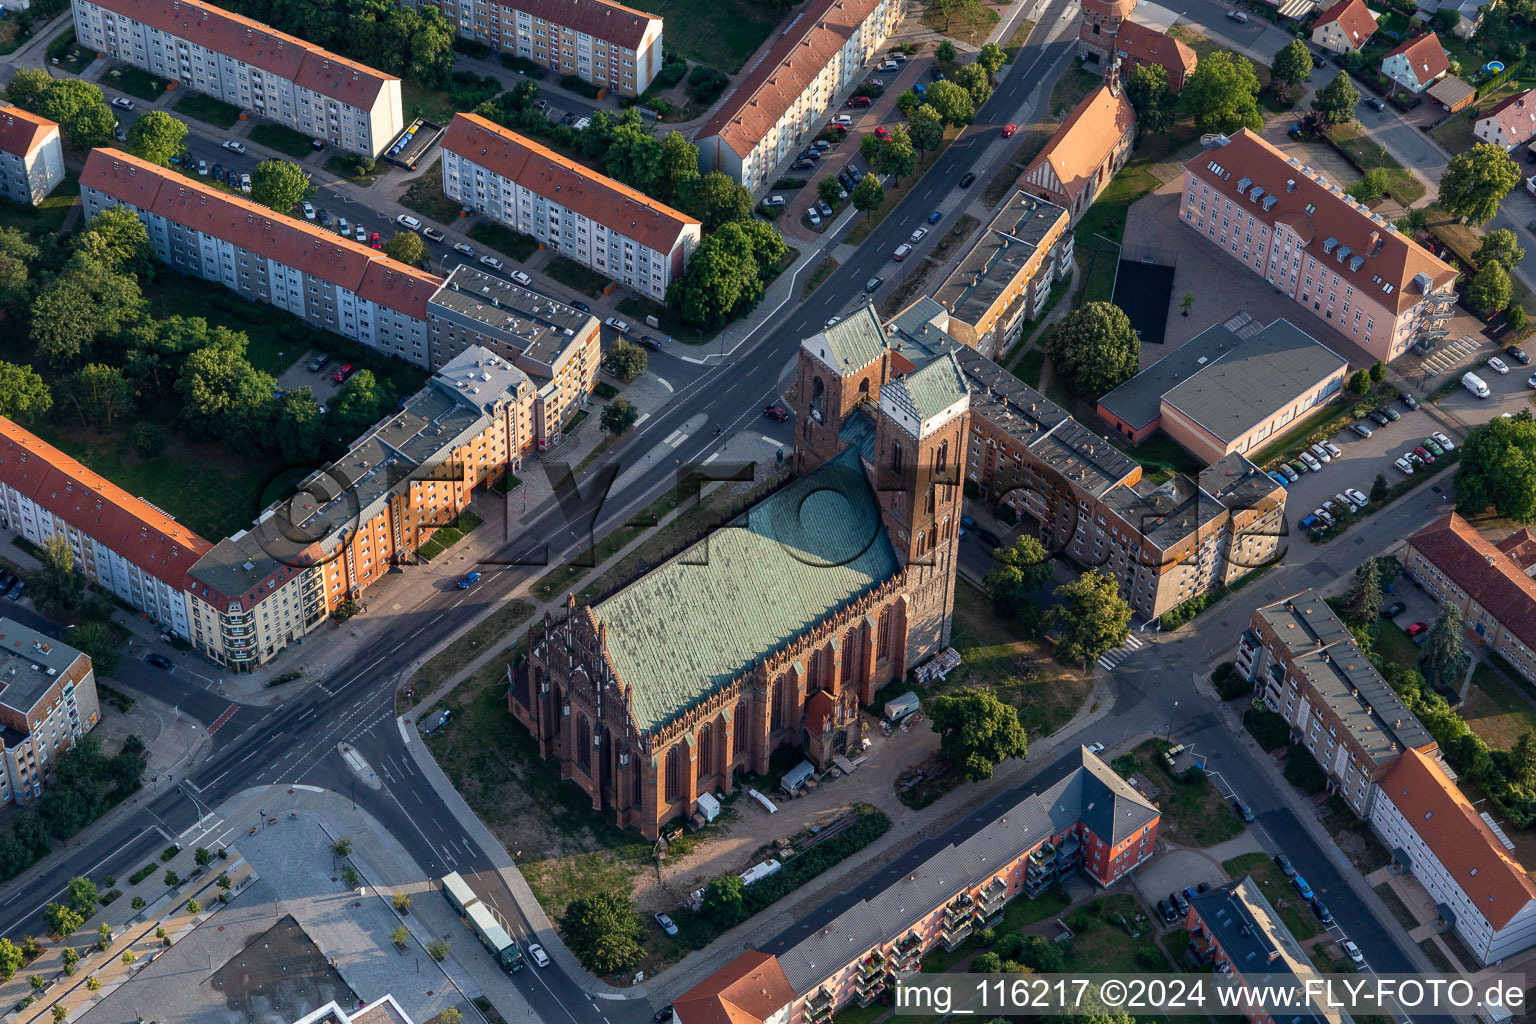 Vue aérienne de L'église St. marie à Prenzlau dans le département Brandebourg, Allemagne